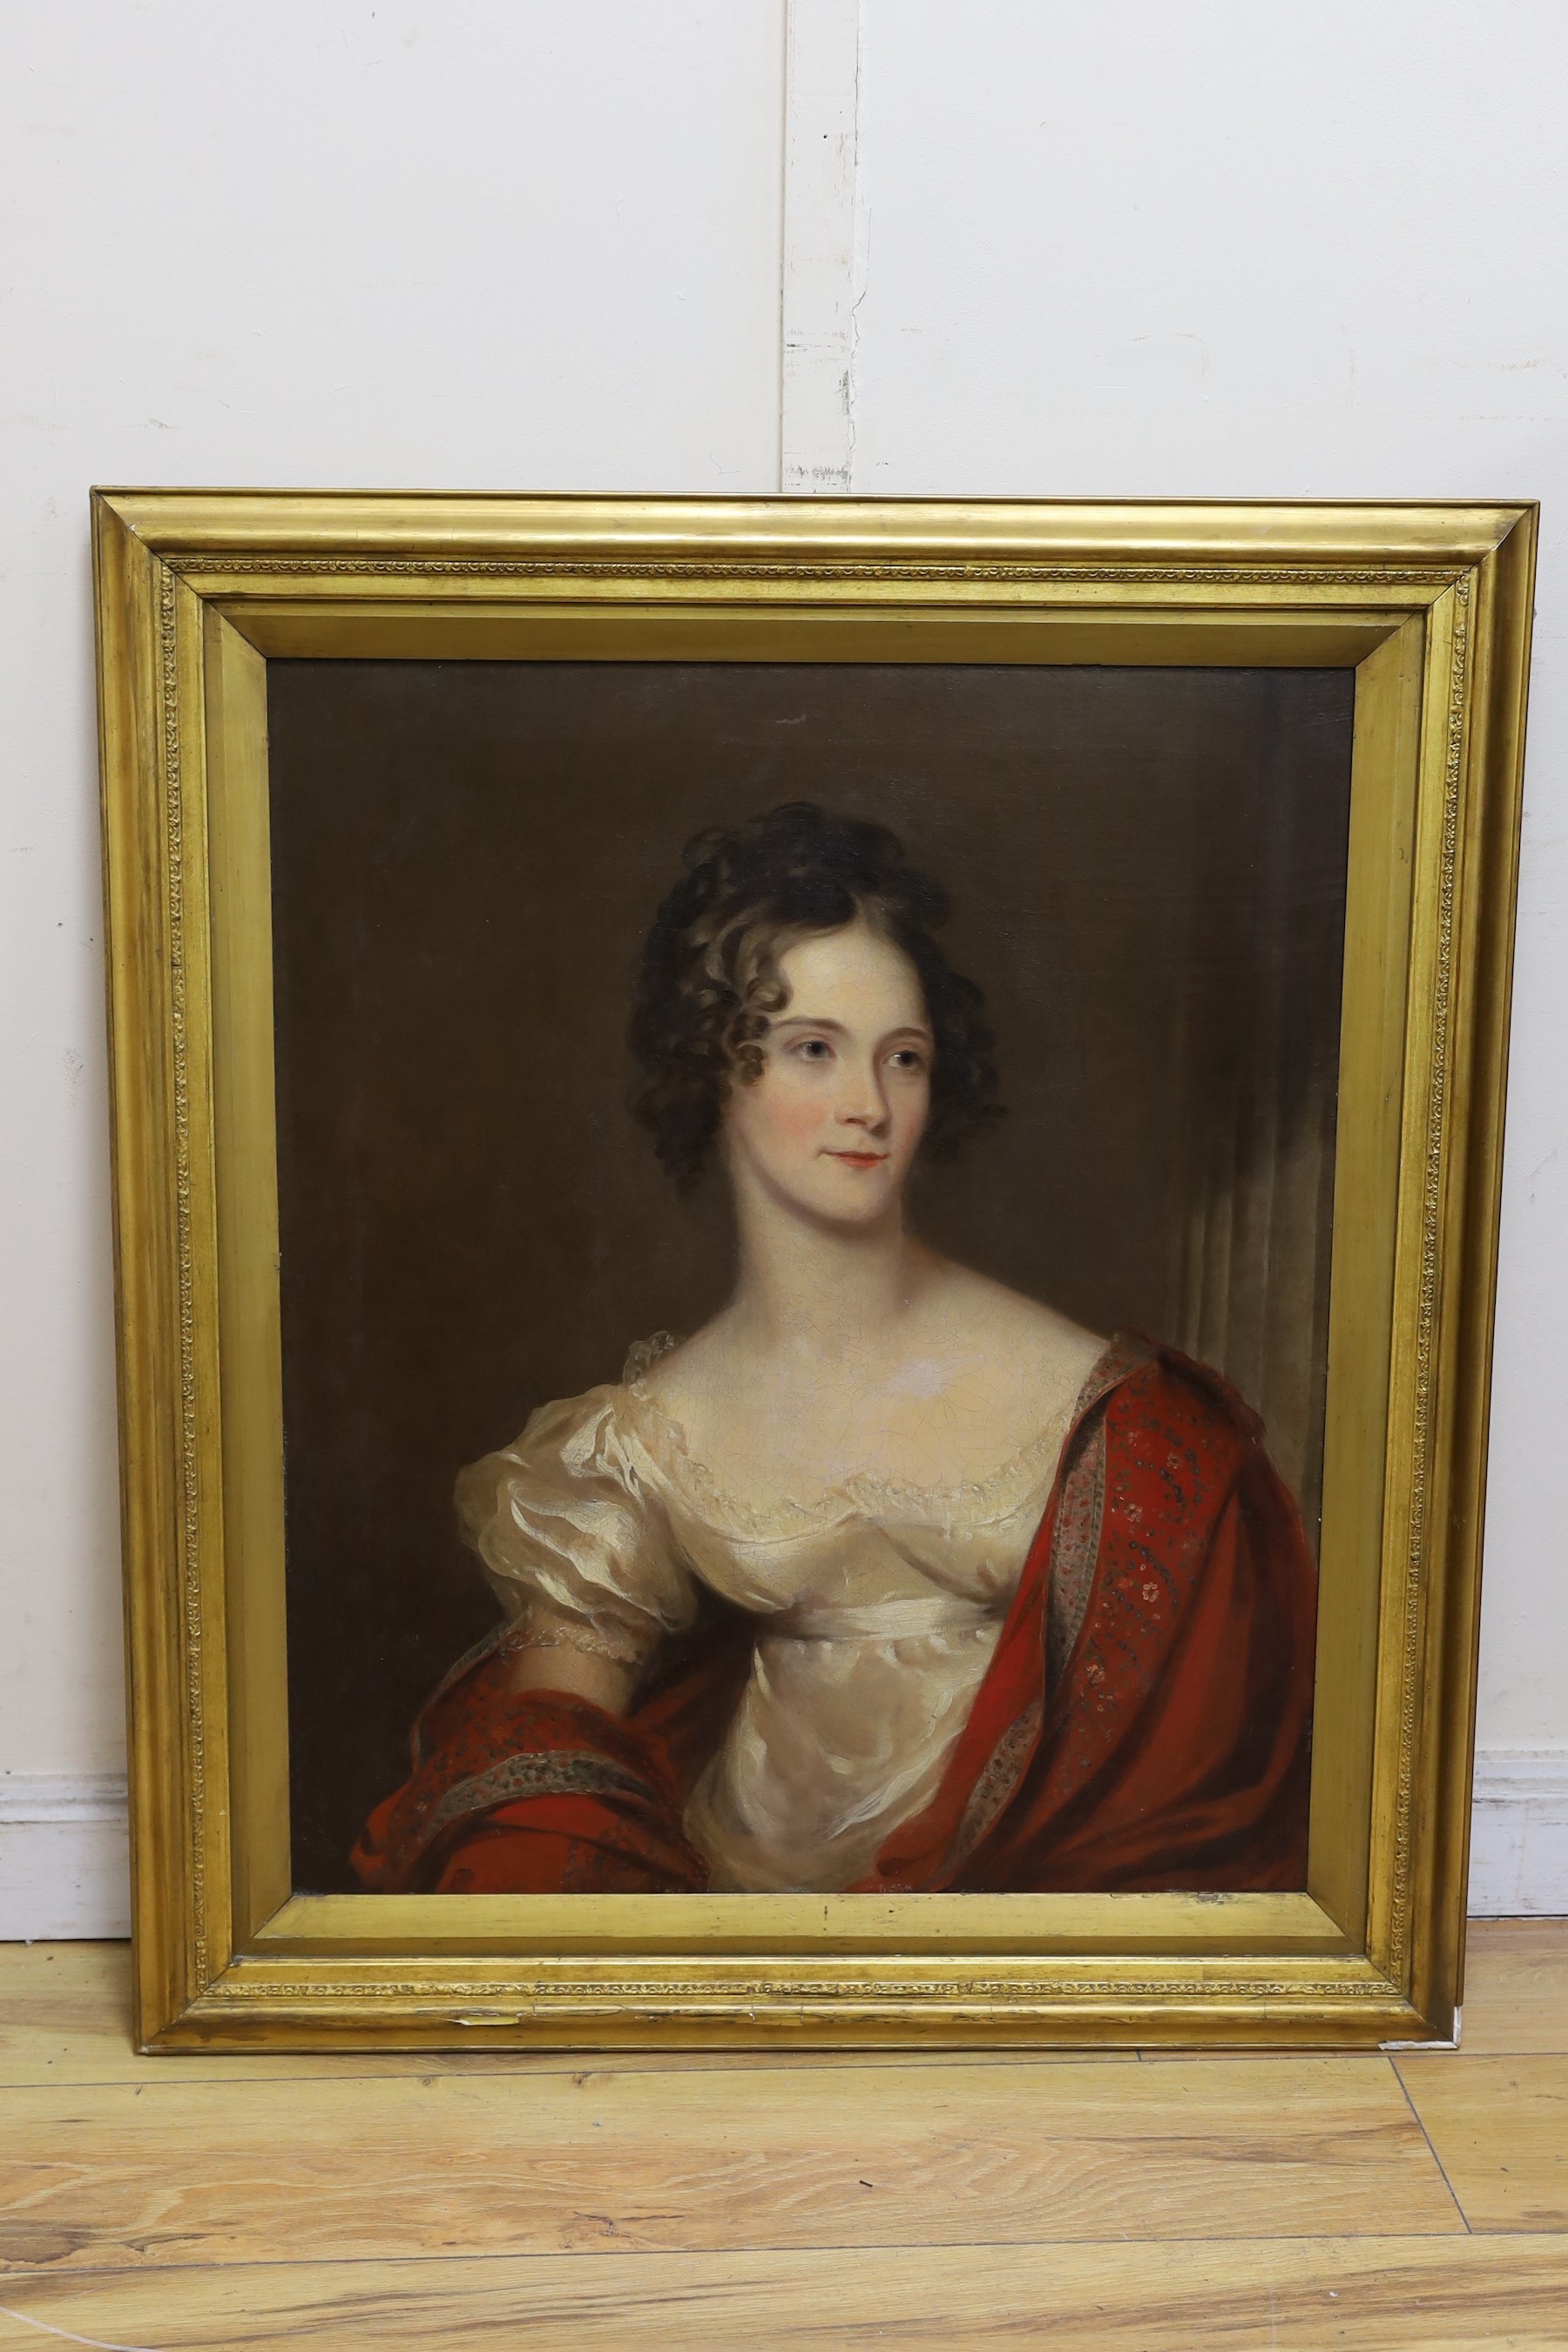 Early 19th century English School, oil on canvas, Portrait Eliza Mary Milward Pogson (1797-1823), wife of General McKin.. , 74 x 62cm